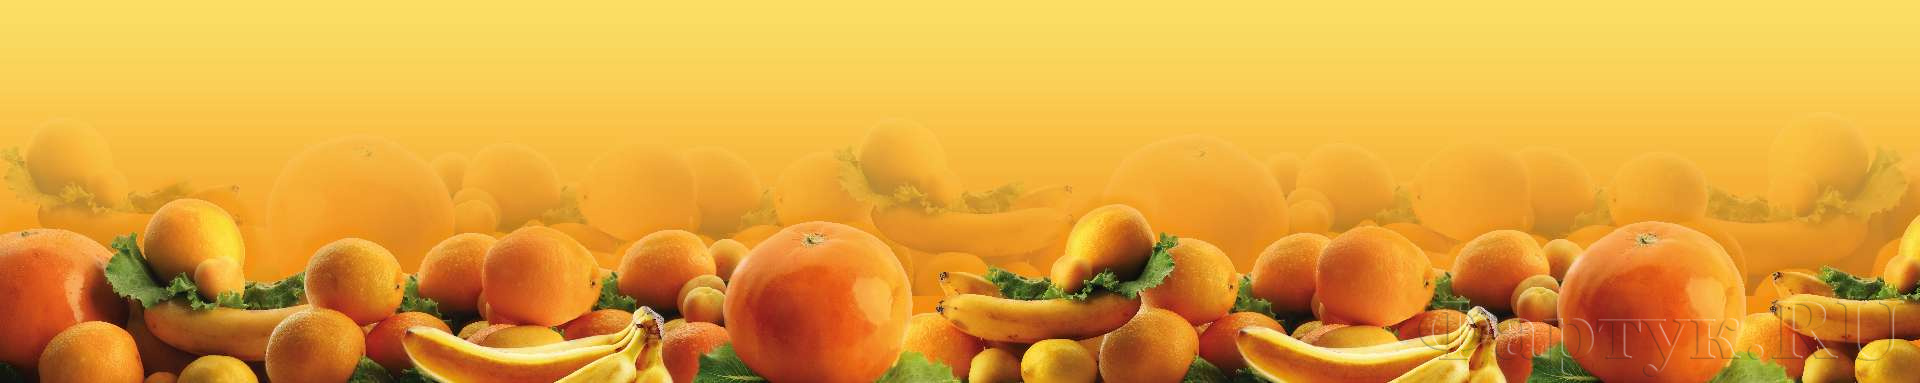 Оранжевый фруктовый коллаж